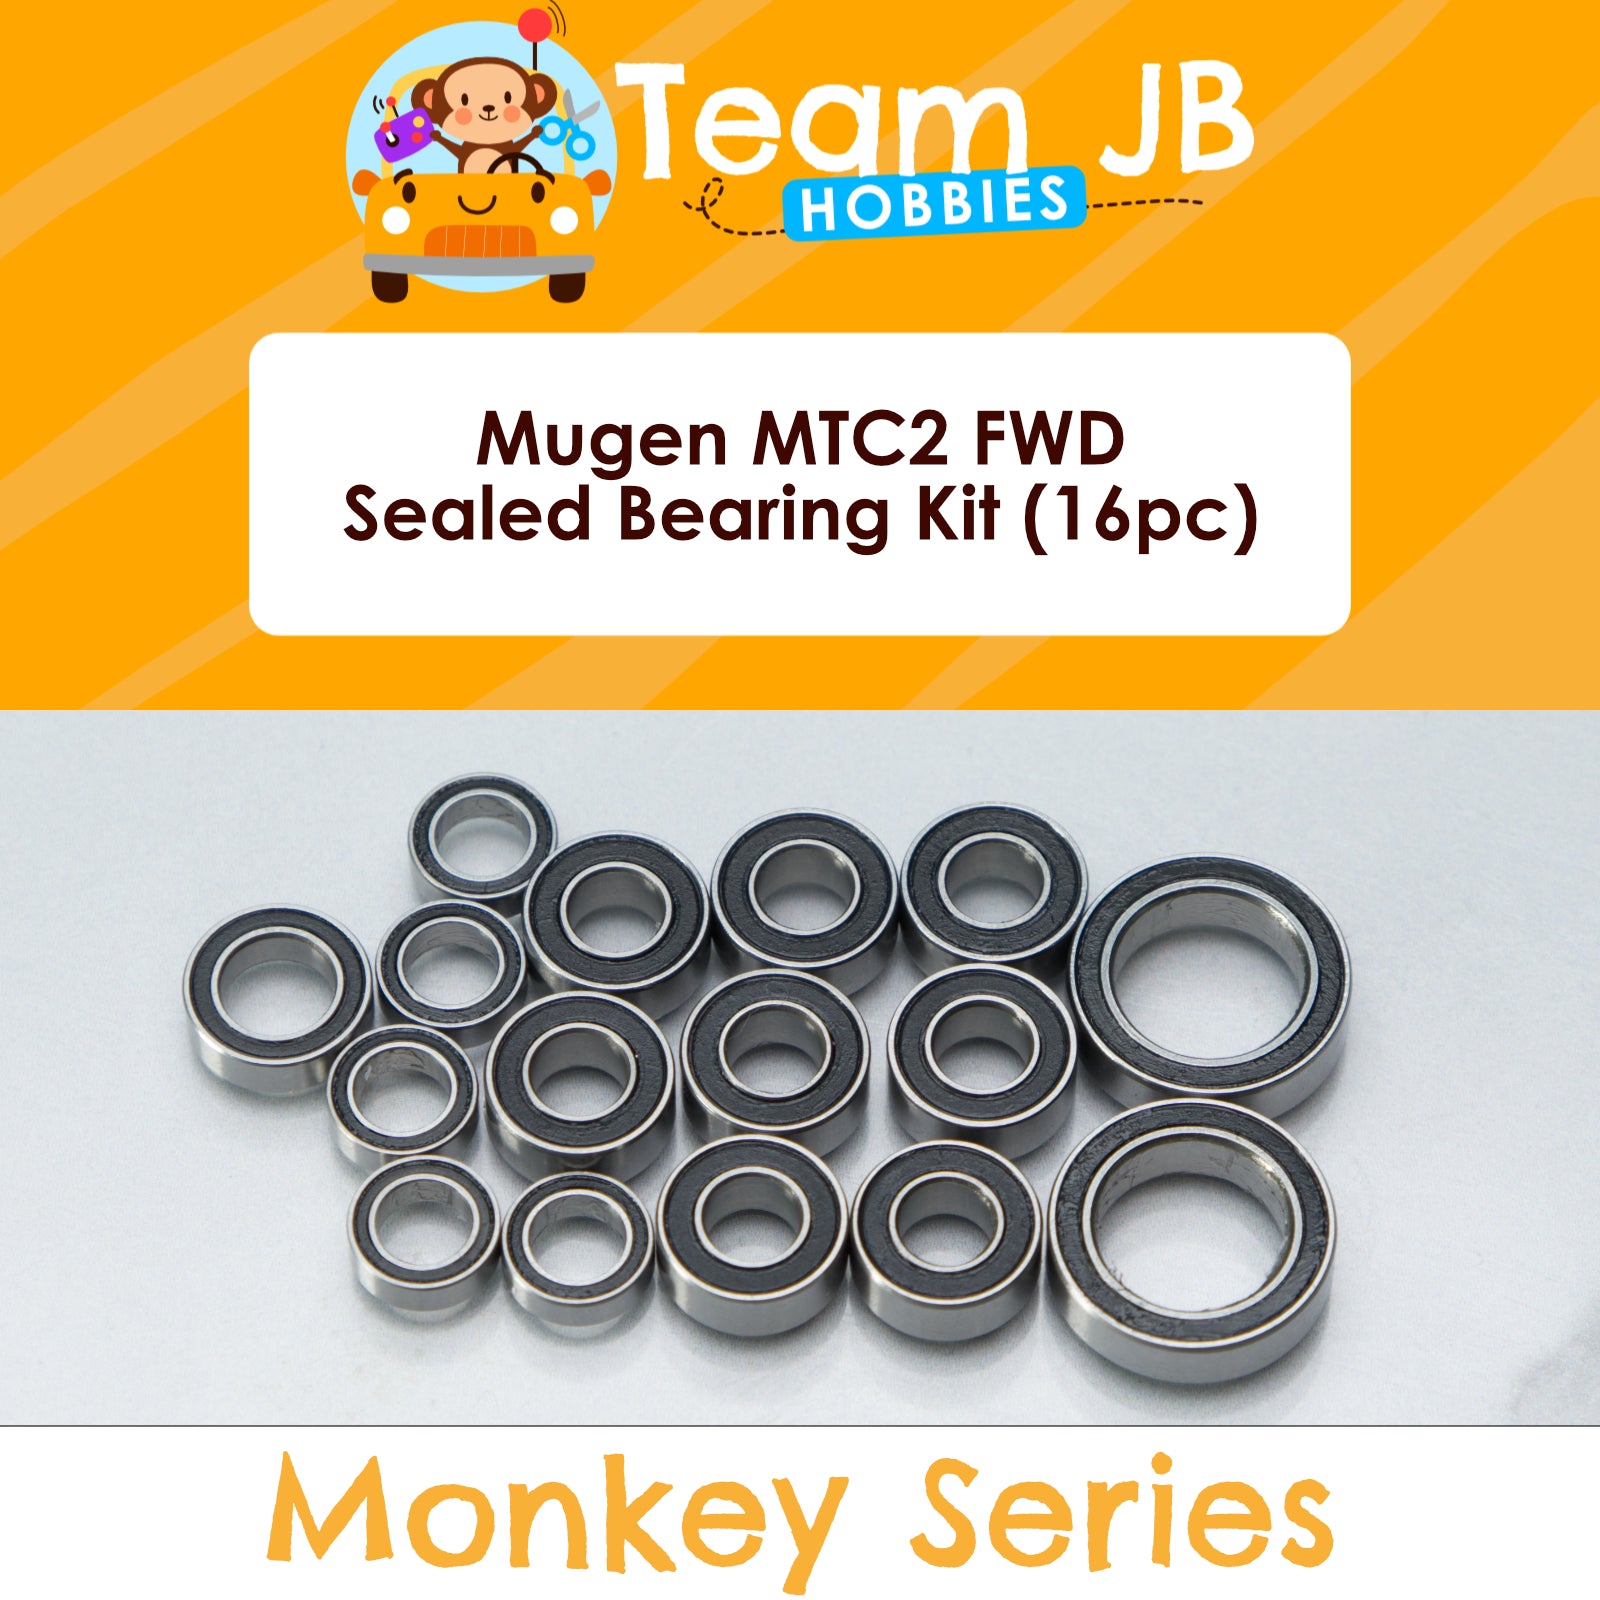 Mugen MTC2 FWD - Sealed Bearing Kit